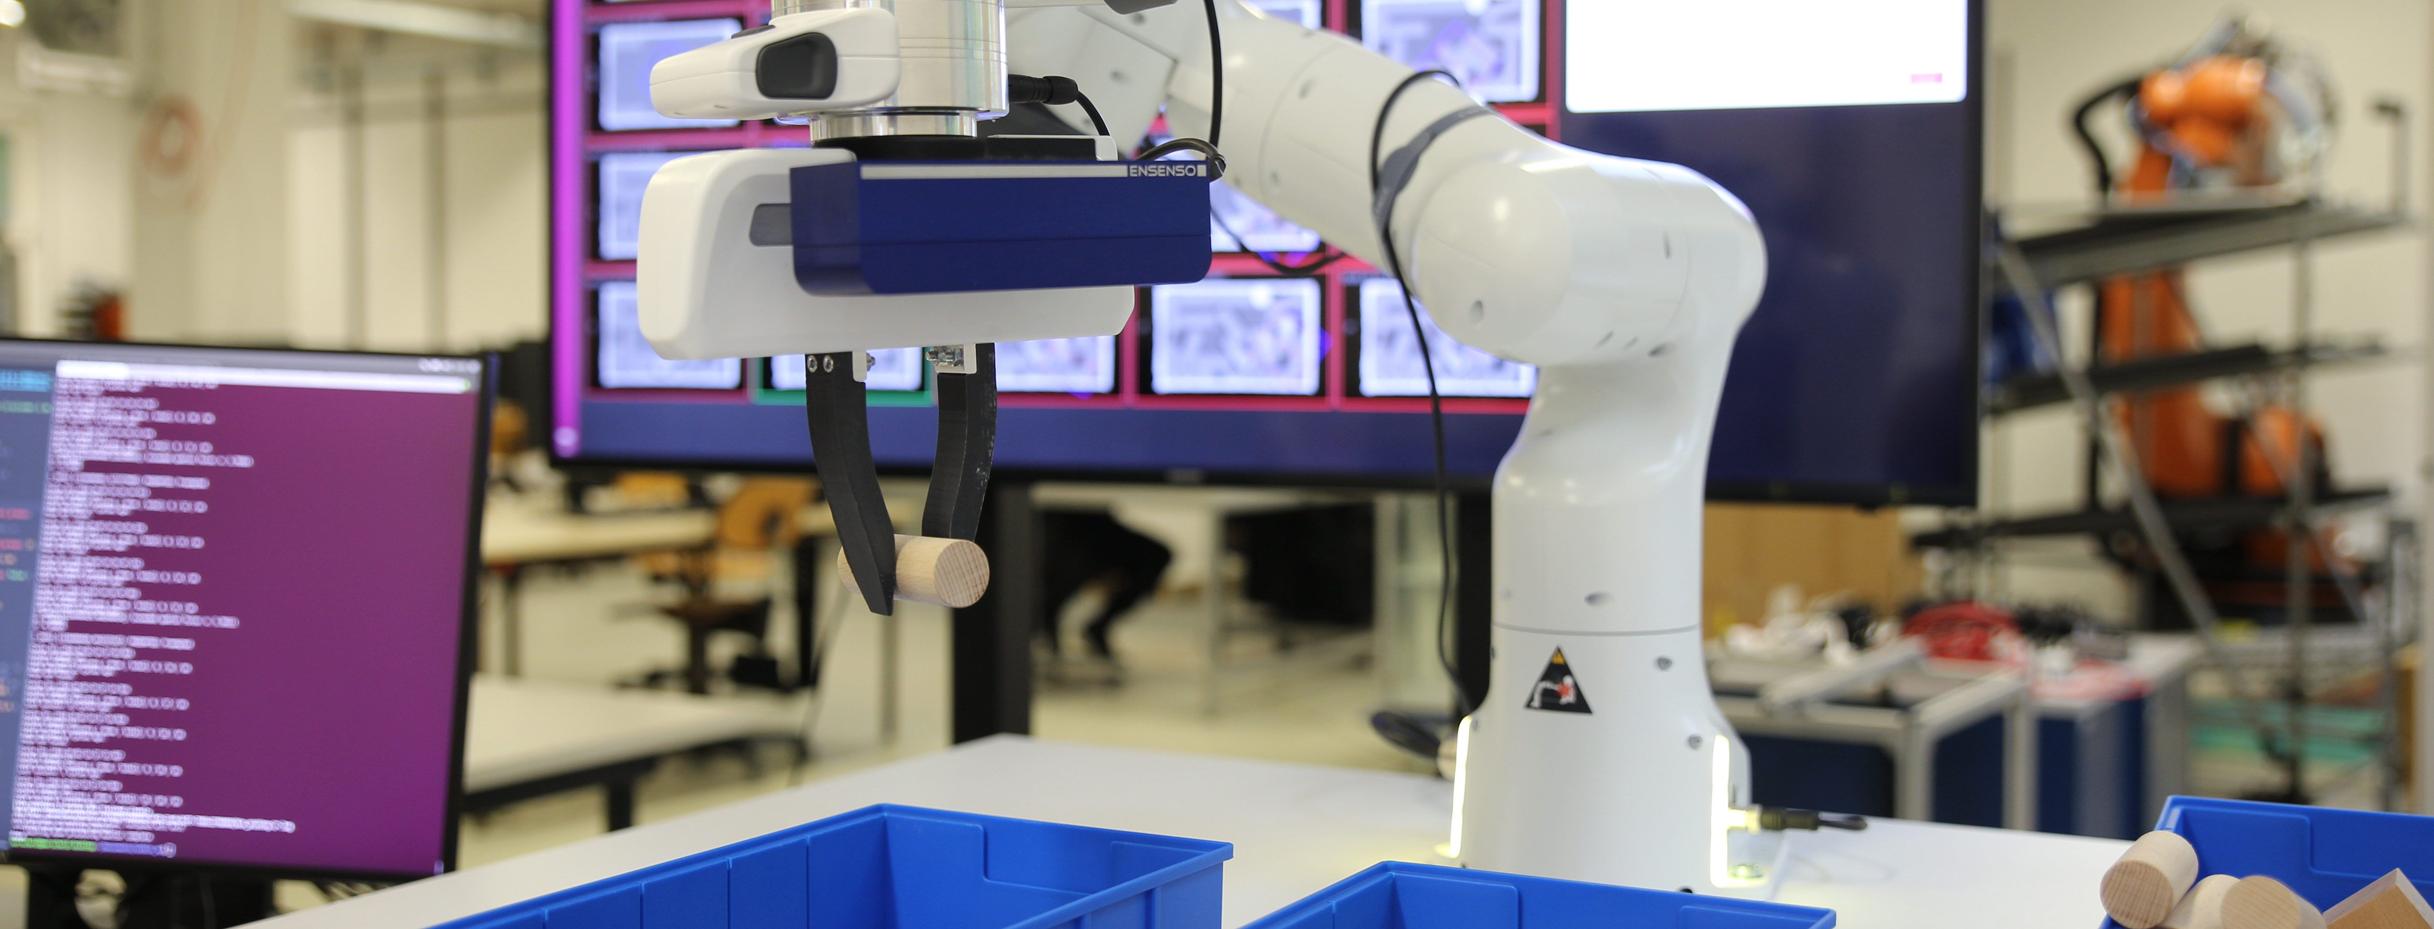 Roboter lernt selbständig durch Ausprobieren - Beispiel für maschinelles Lernen (Quelle: Lars Berscheid, KIT)